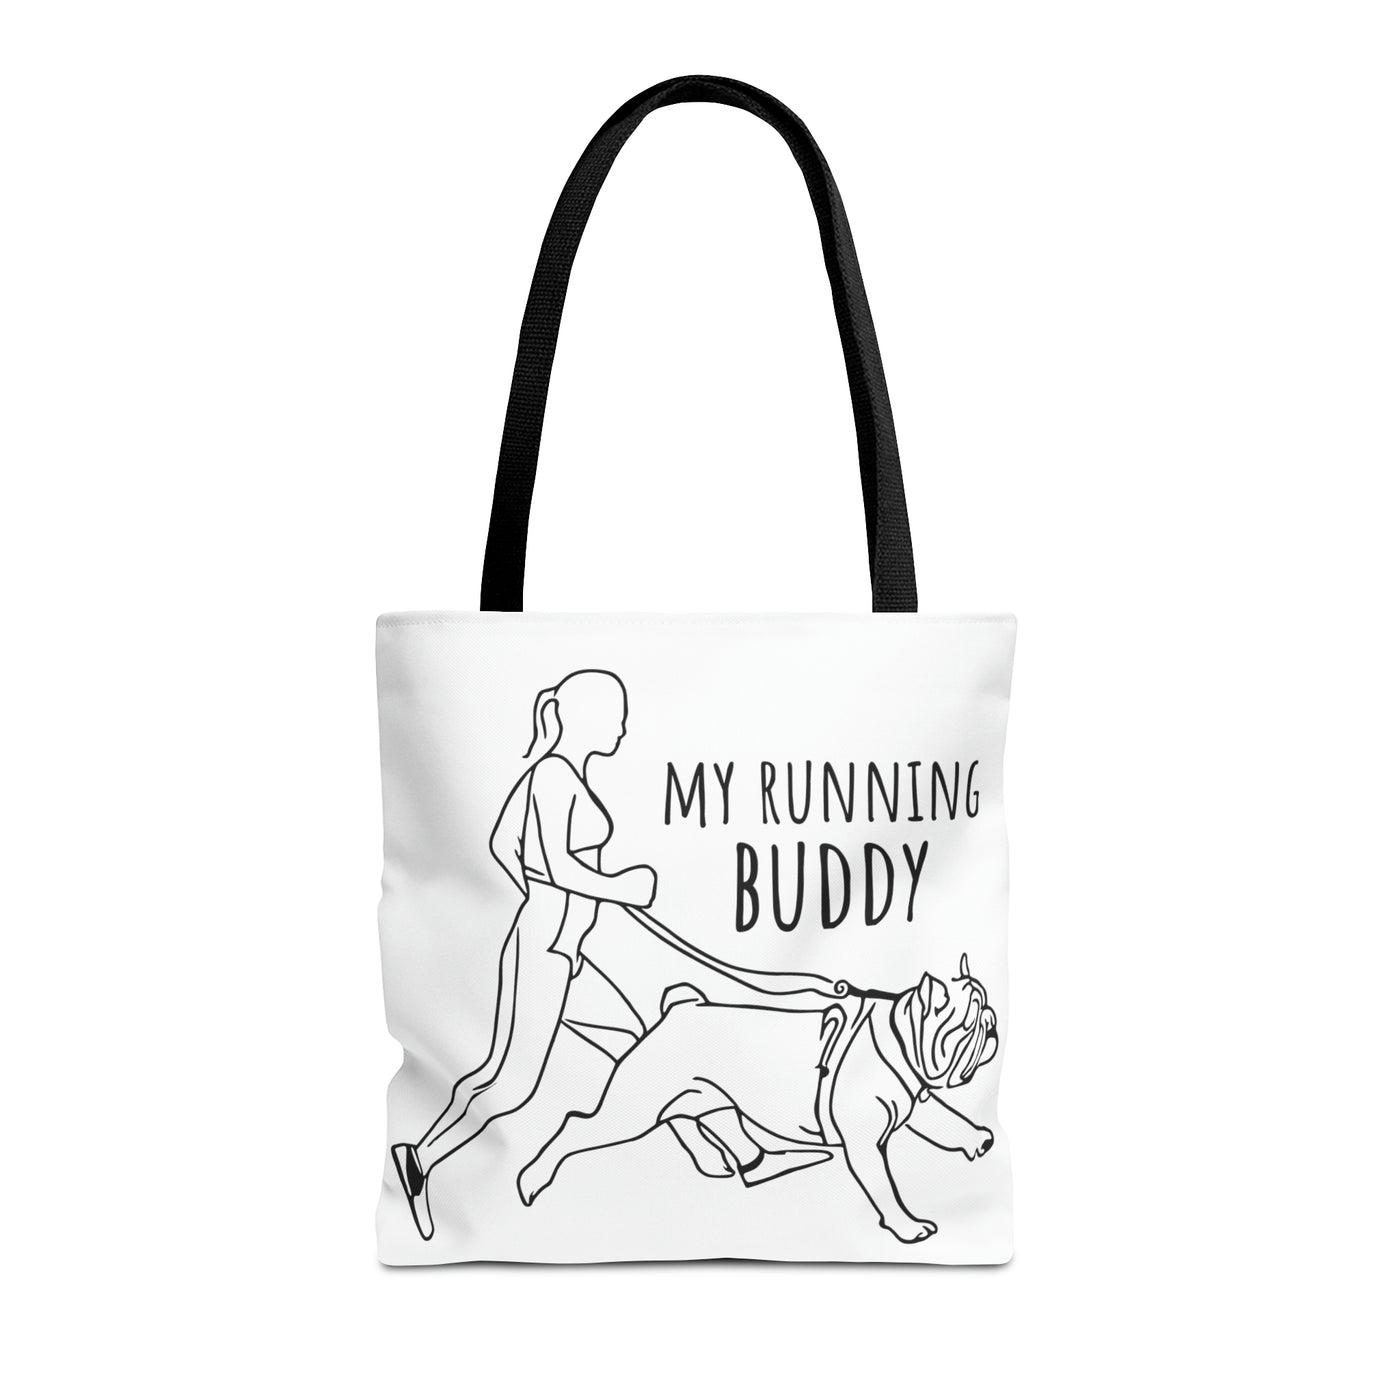 My Running Buddy Tote Bag